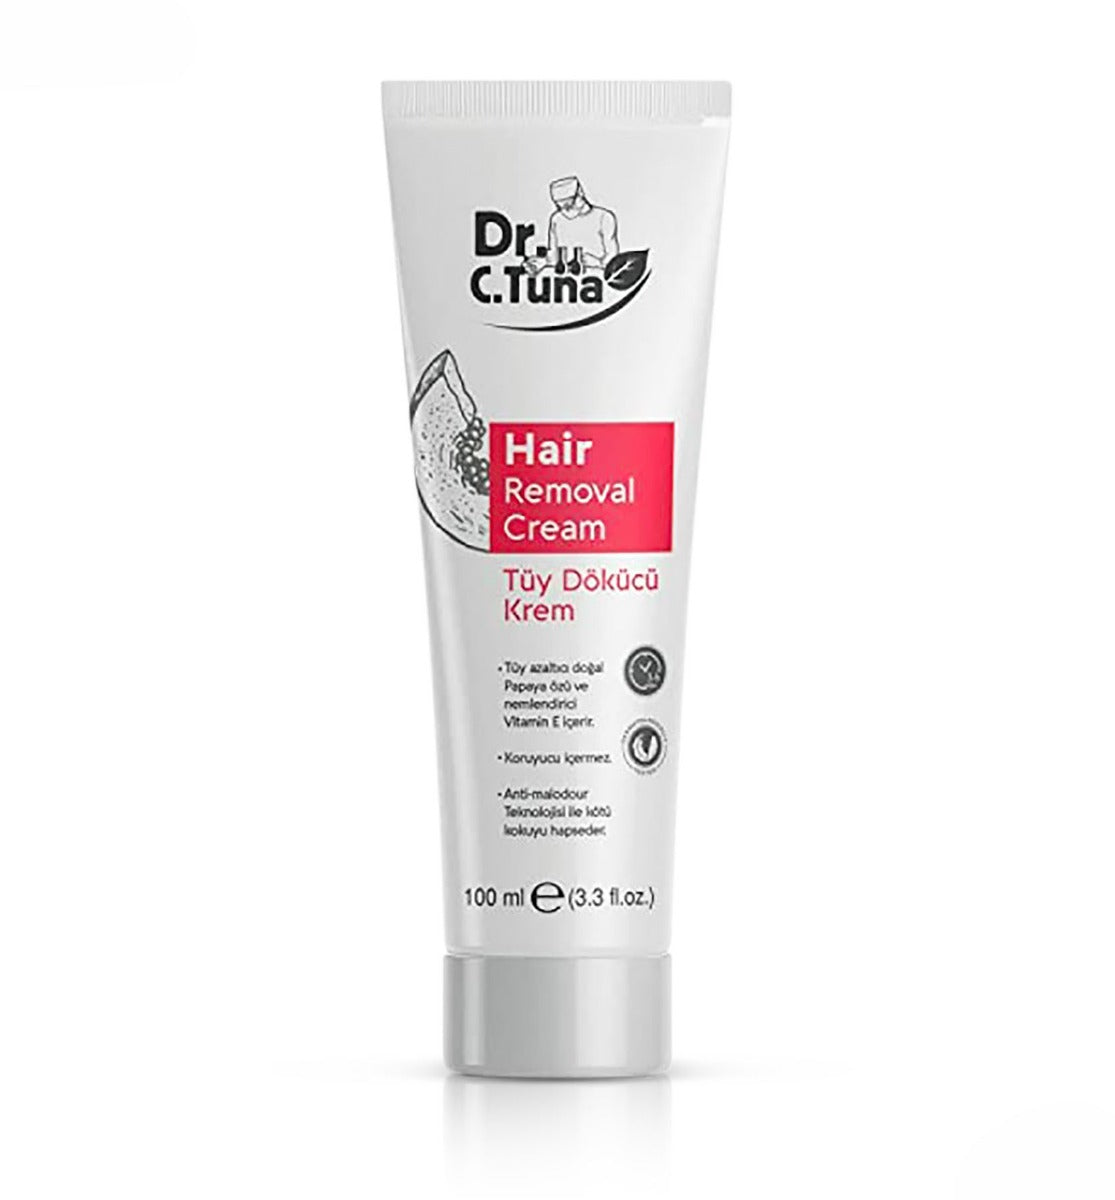 Dr. C. Tuna Hair Removal Cream (100ml)